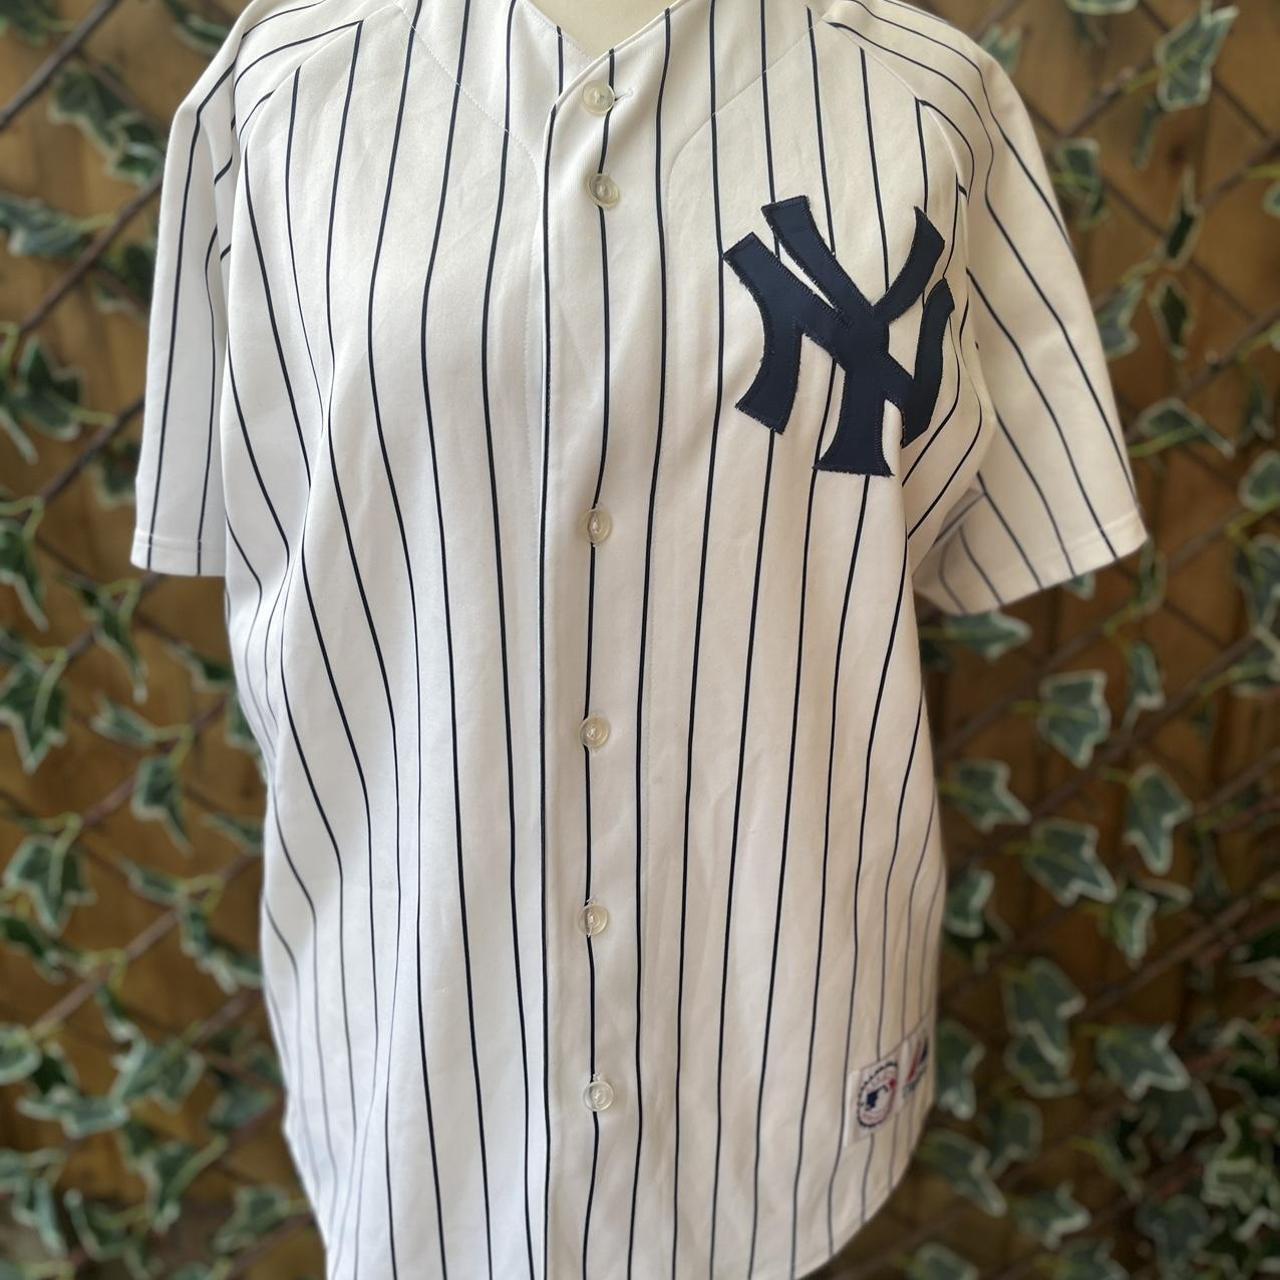 Dodgers MLB baseball jersey Size xxl True fan - Depop